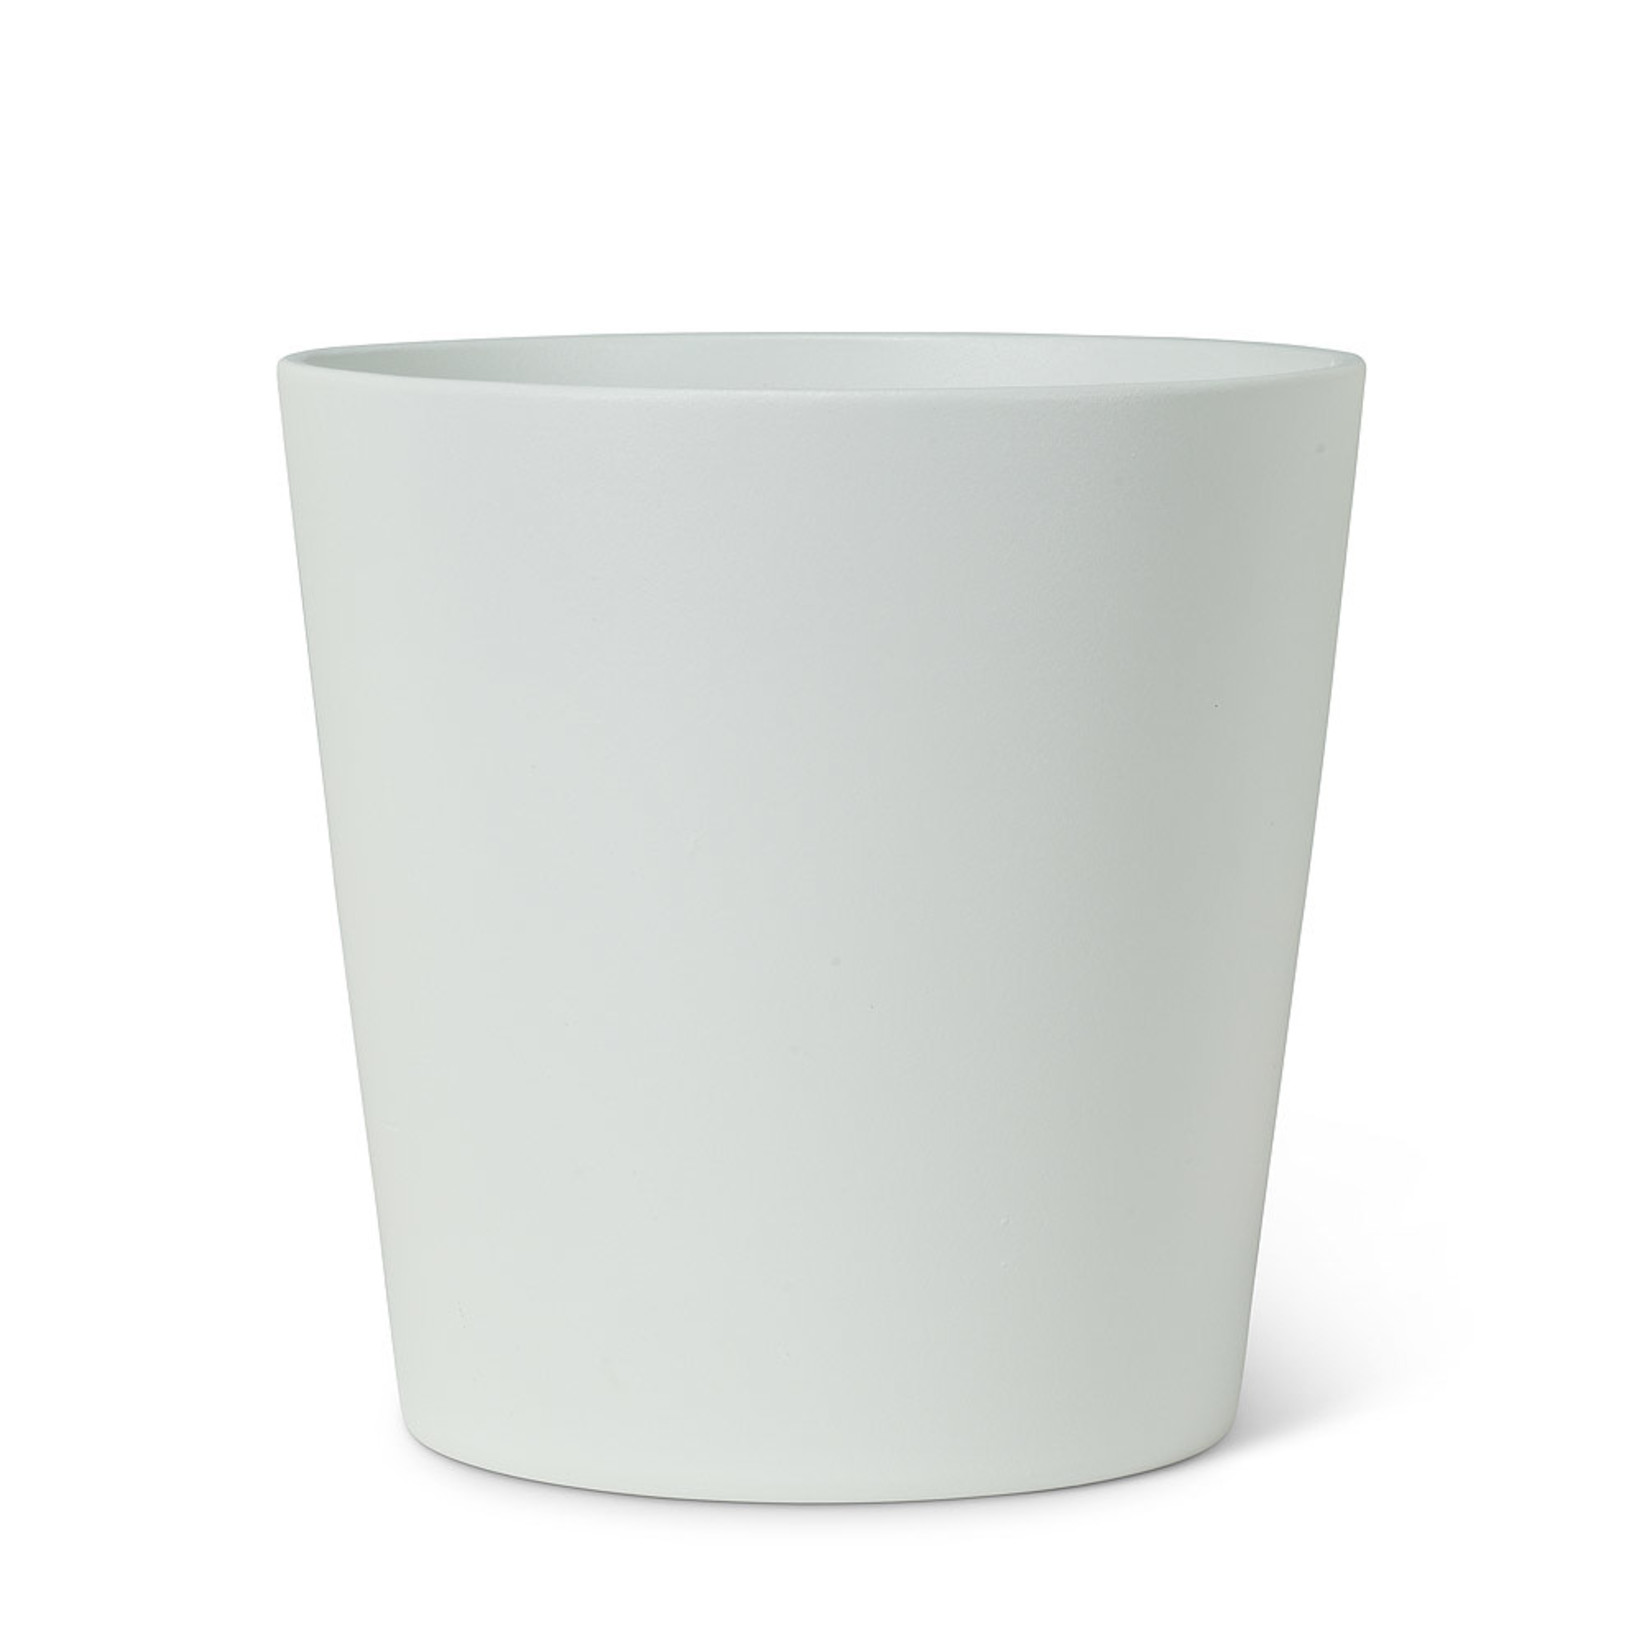 Abbott White Classic Pot - 7.5"